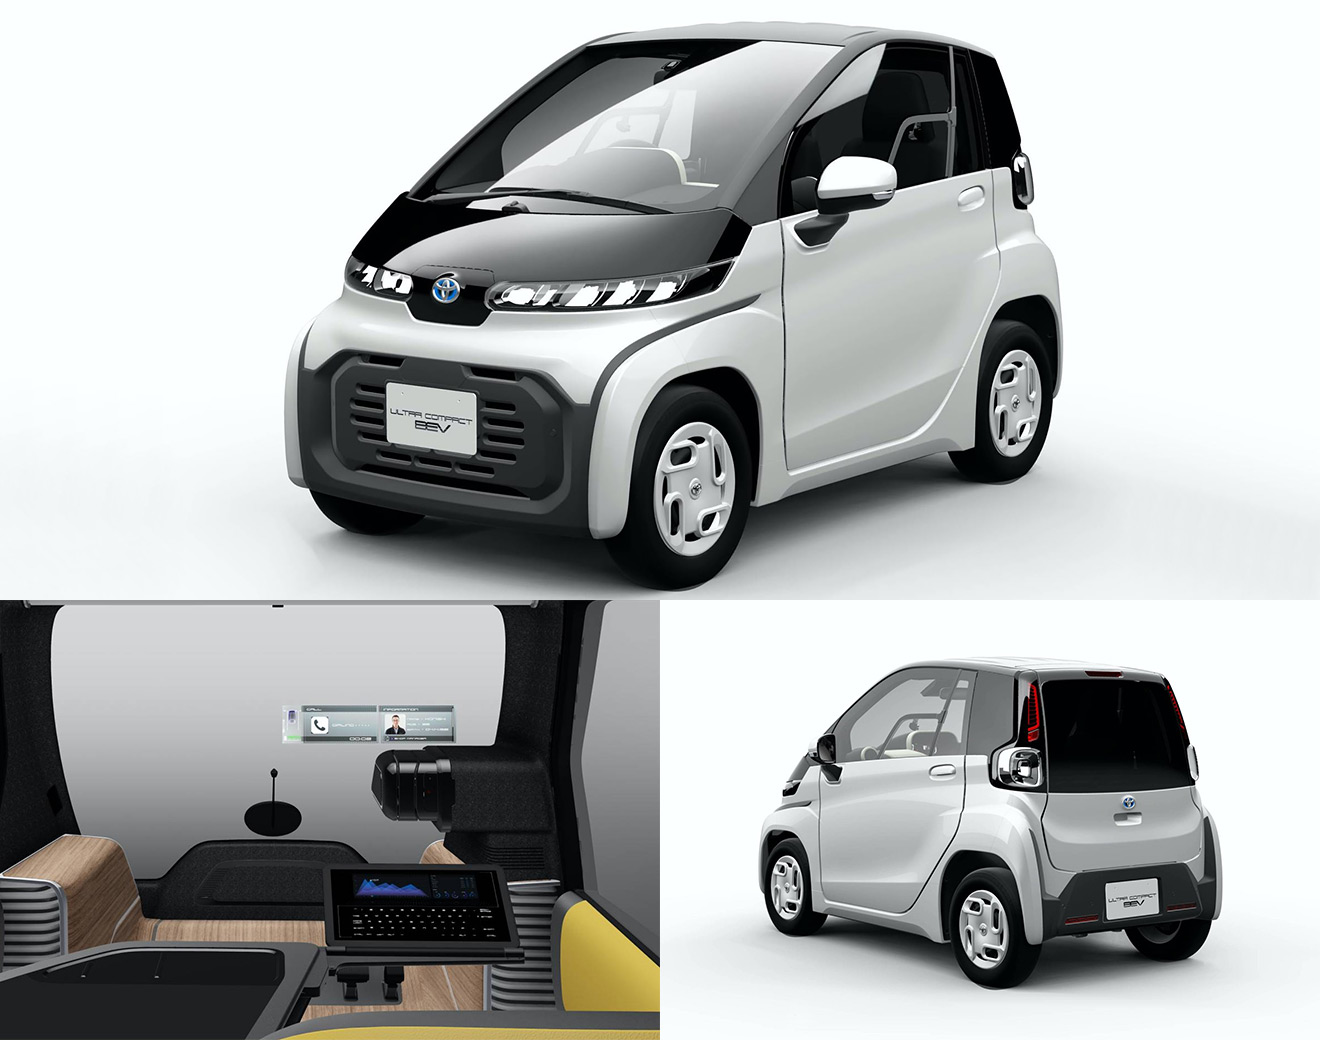 Двухместный электромобильчик Toyota BEV (Battery Electric Vehicle) имеет 2,5 м в длину и 1,3 м в ширину &mdash; это меньше, чем Smart ForTwo. Максимальная скорость не превышает 60 км/ч, а на одной зарядке машина может проехать около 100 км, чего должно хватать для ежедневных поездок в мегаполисе. Новинка получит две версии: стандартную для обычных пользователей и деловую со специальным раскладным столиком для удобной работы на планшете.